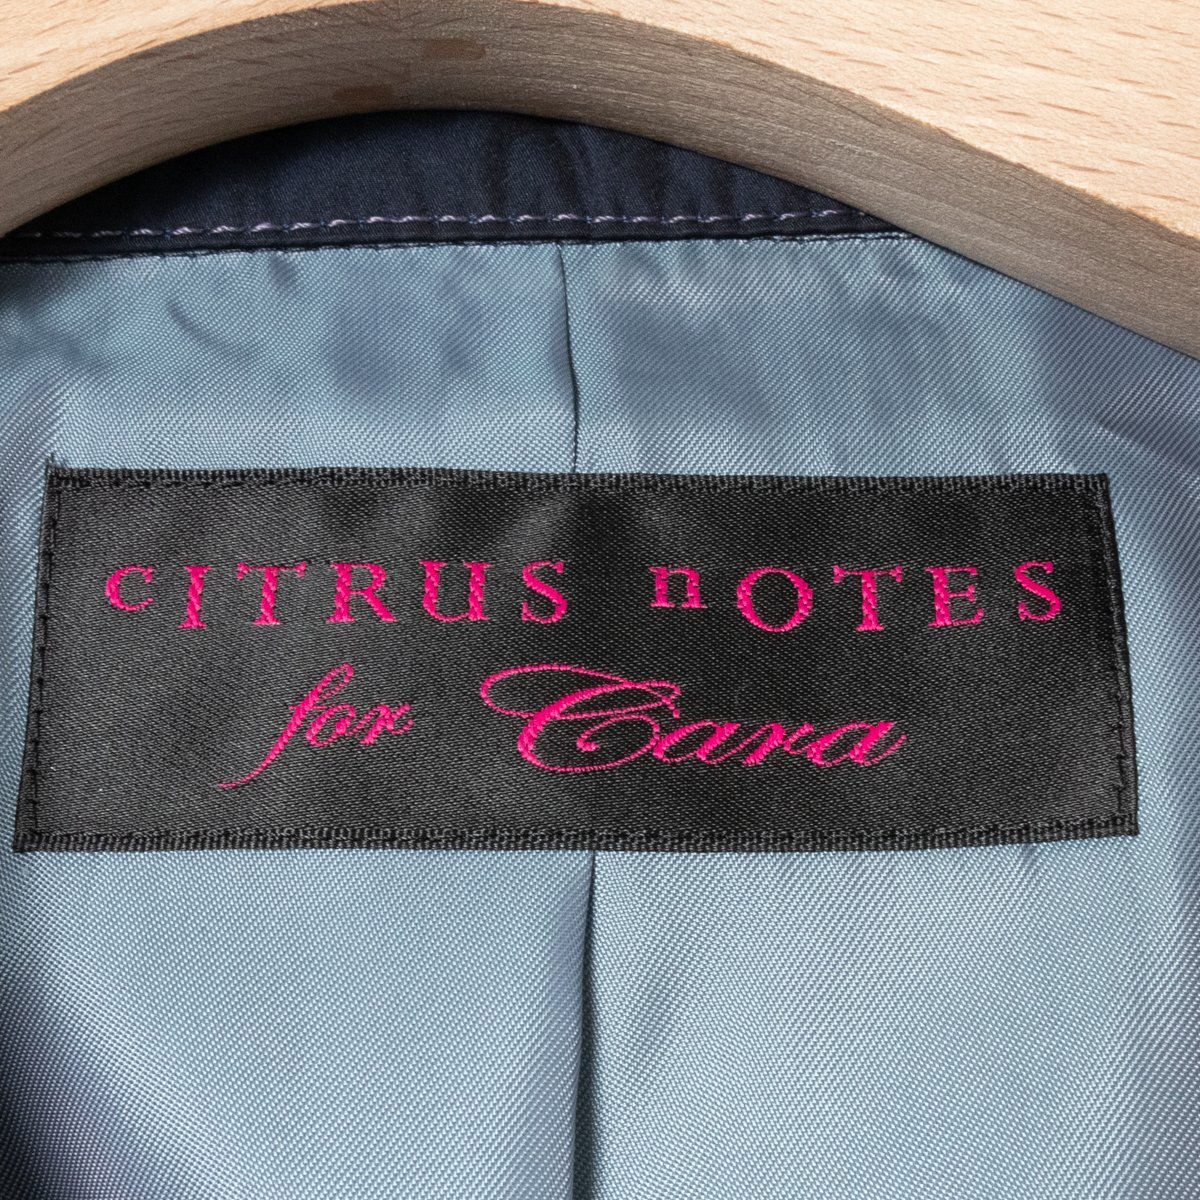 CITRUS NOTES for Cara Citrus Notes × машина la тренчкот внешний верхняя одежда LC полиэстер 100% темно-синий темно-синий красивый . casual 